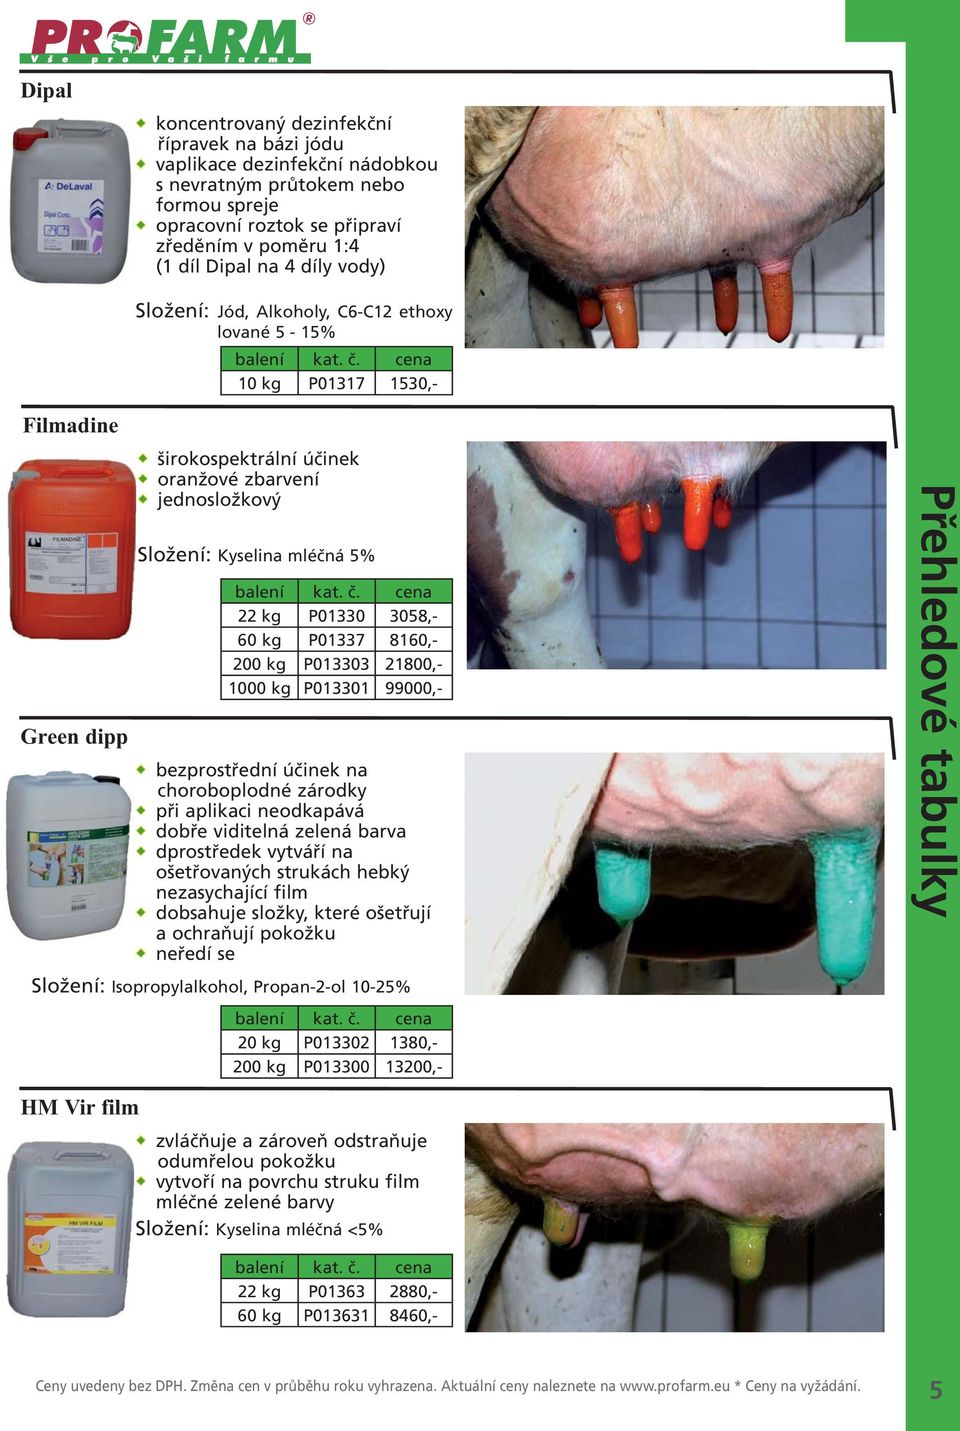 P01337 8160,- 200 kg P013303 21800,- 1000 kg P013301 99000,- bezprostřední účinek na choroboplodné zárodky při aplikaci neodkapává dobře viditelná zelená barva dprostředek vytváří na ošetřovaných